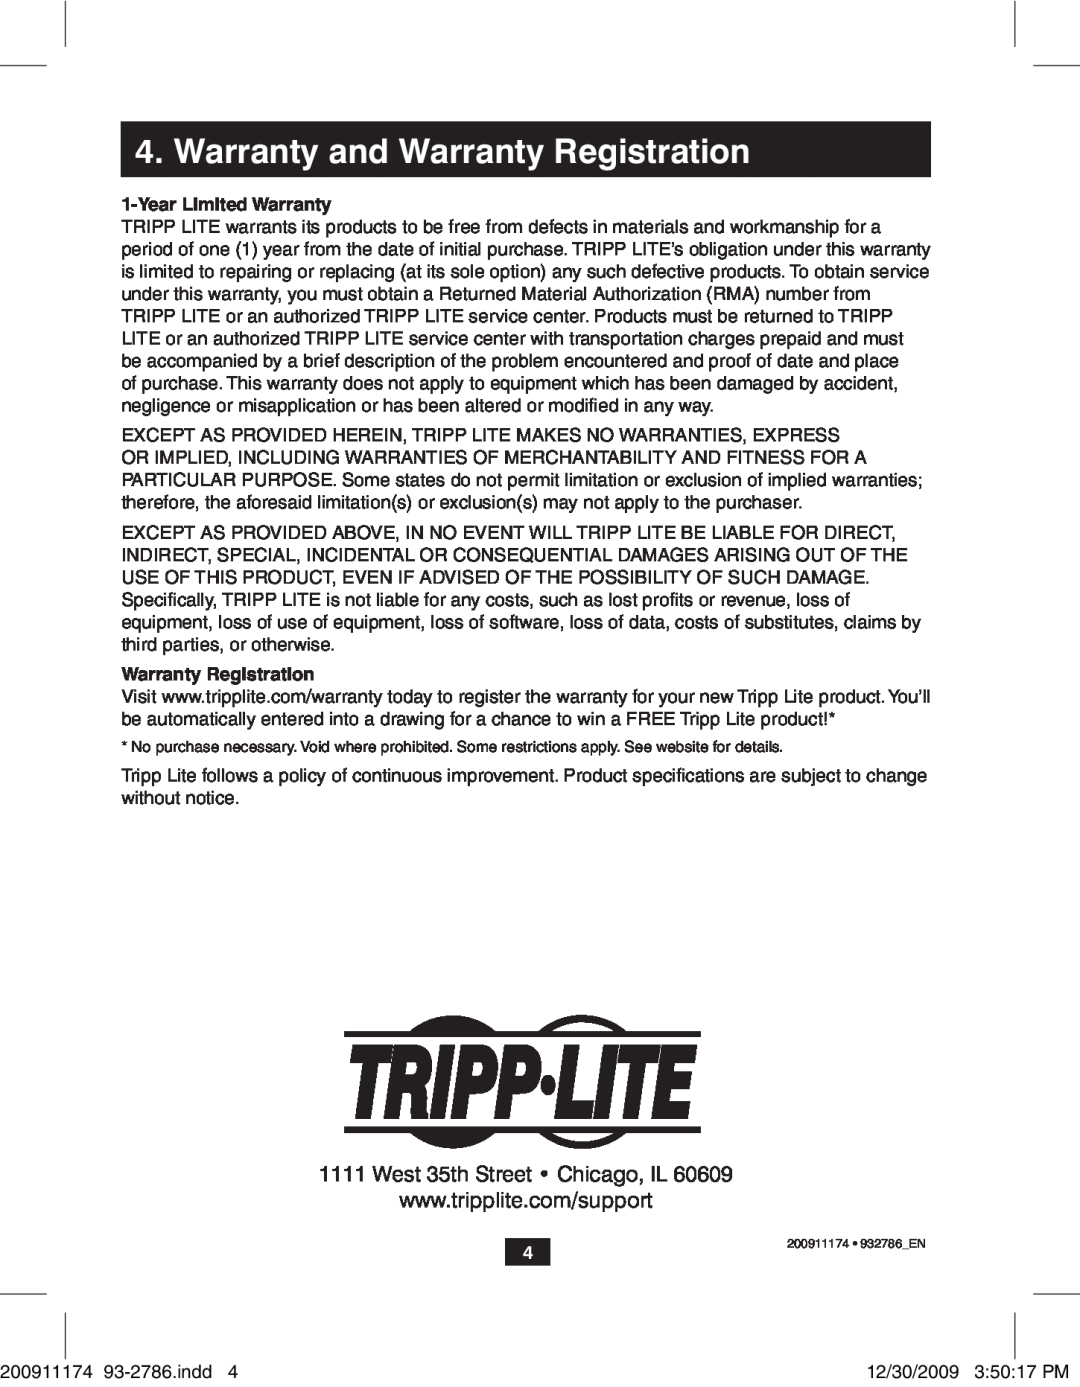 Tripp Lite B125-150 owner manual Warranty and Warranty Registration, YearLimited Warranty 